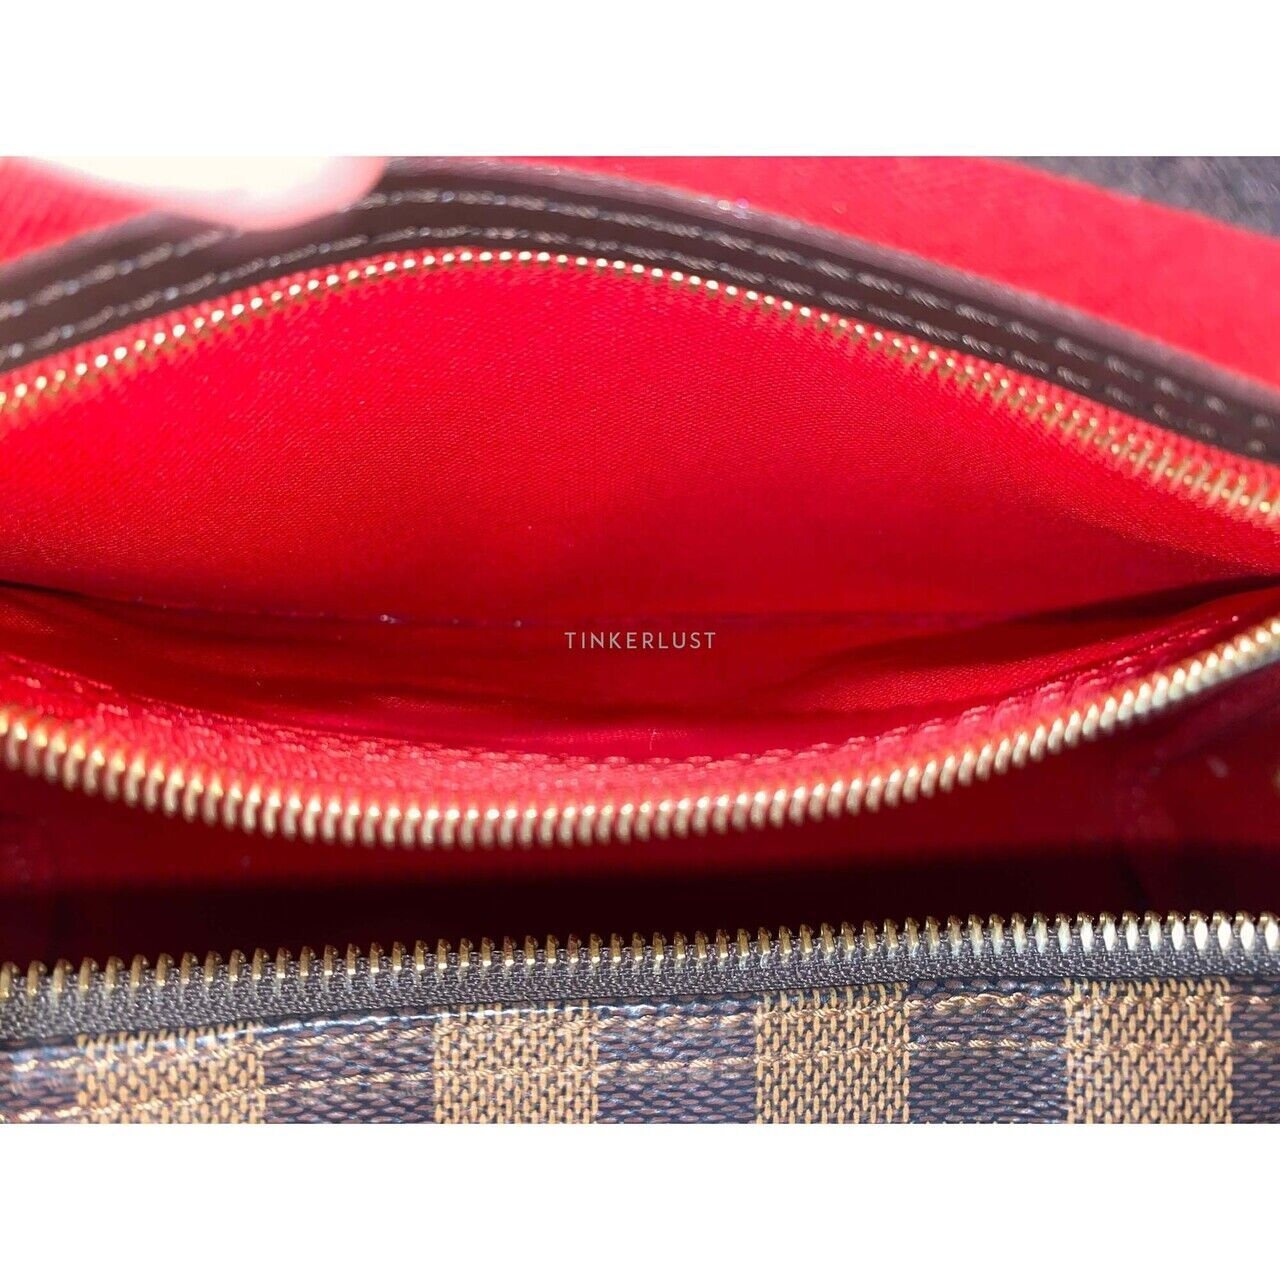 Louis Vuitton Speedy 30 Damier GHW 2018 Handbag